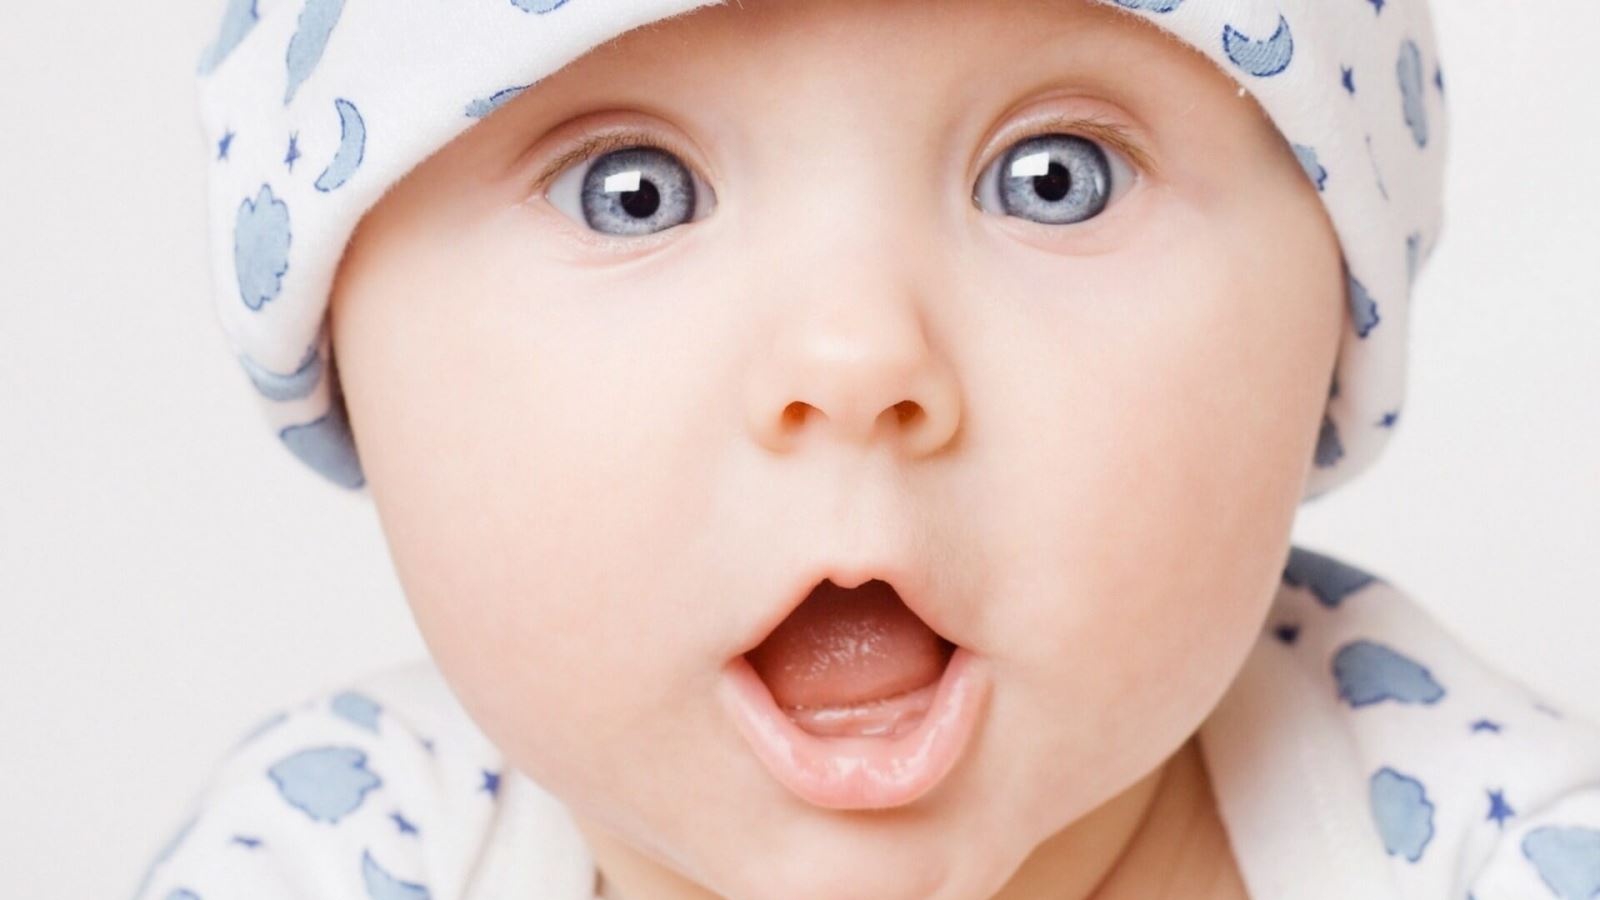  Tạo mắt 2 mí cho trẻ sơ sinh : Nguyên nhân và cách khắc phục